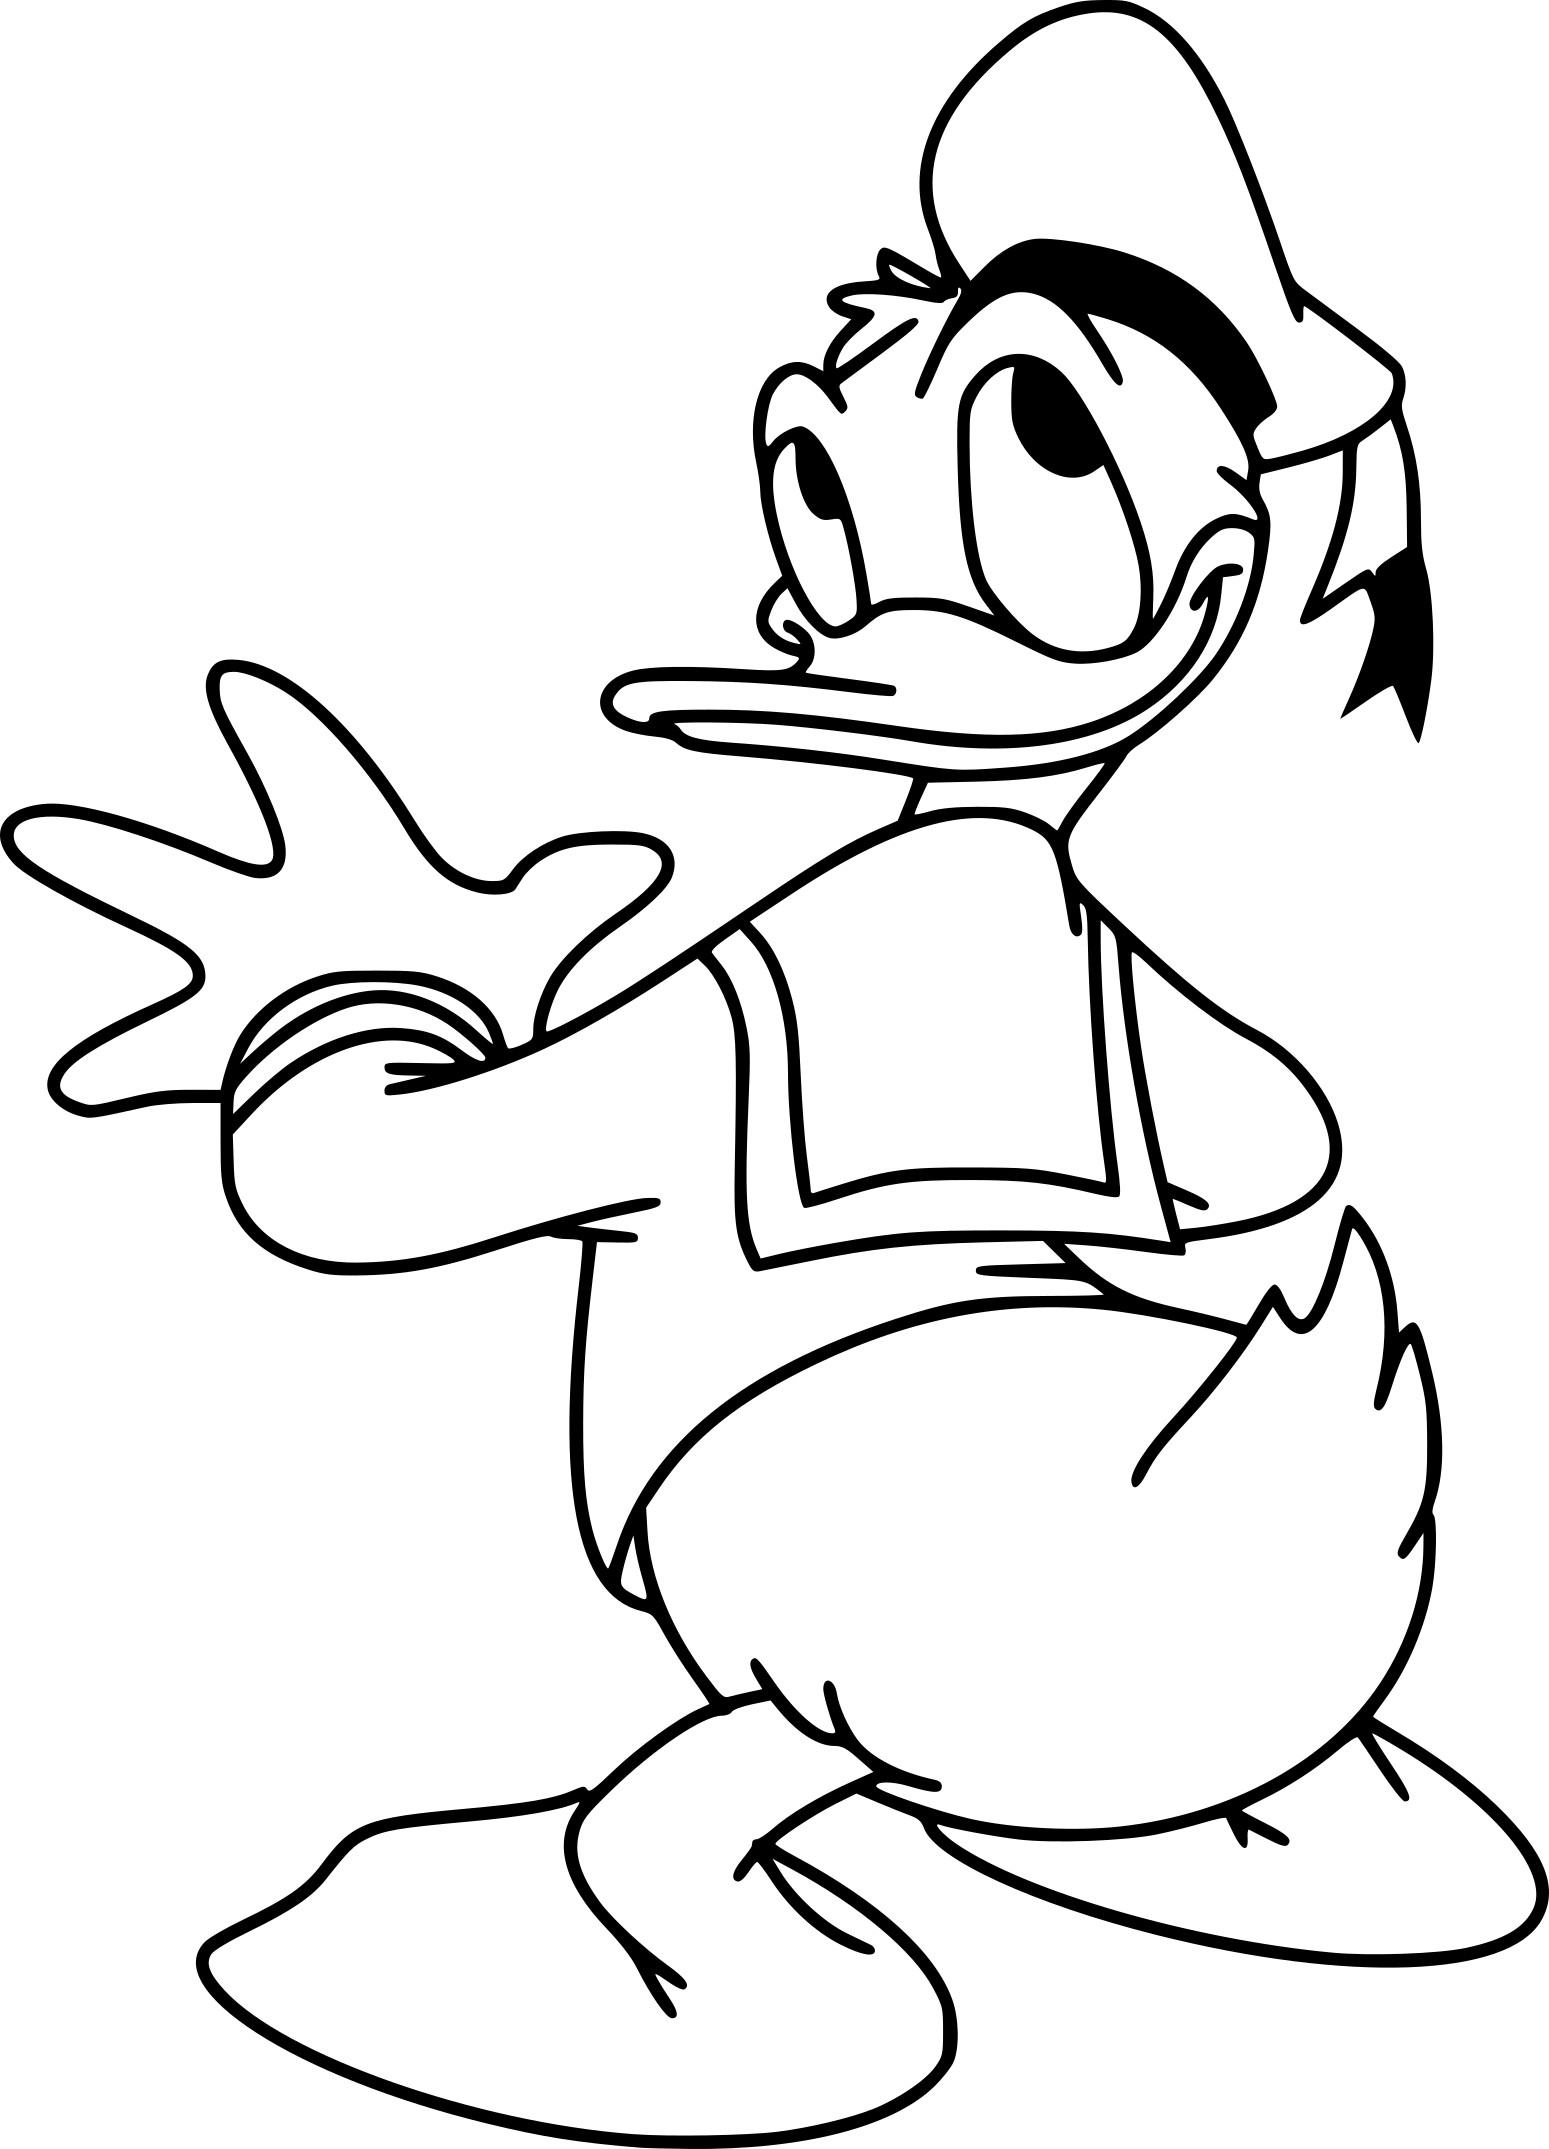 Coloriage Donald Duck gratuit à imprimer